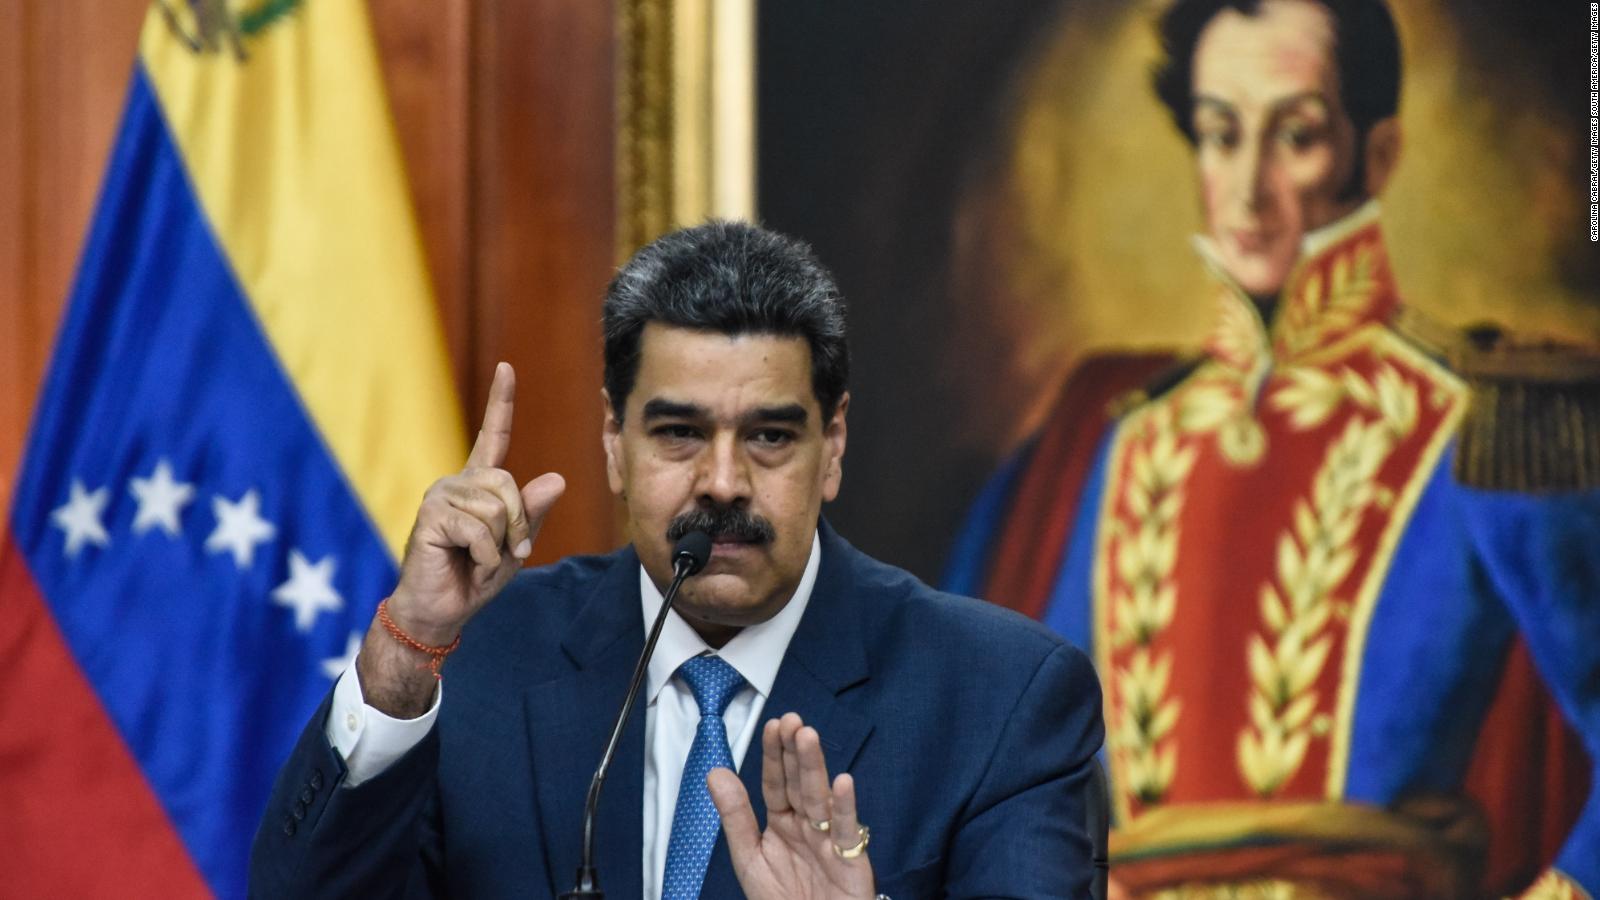 "Queremos que Venezuela vuelva a ser una referencia democrática",
dice candidato opositor